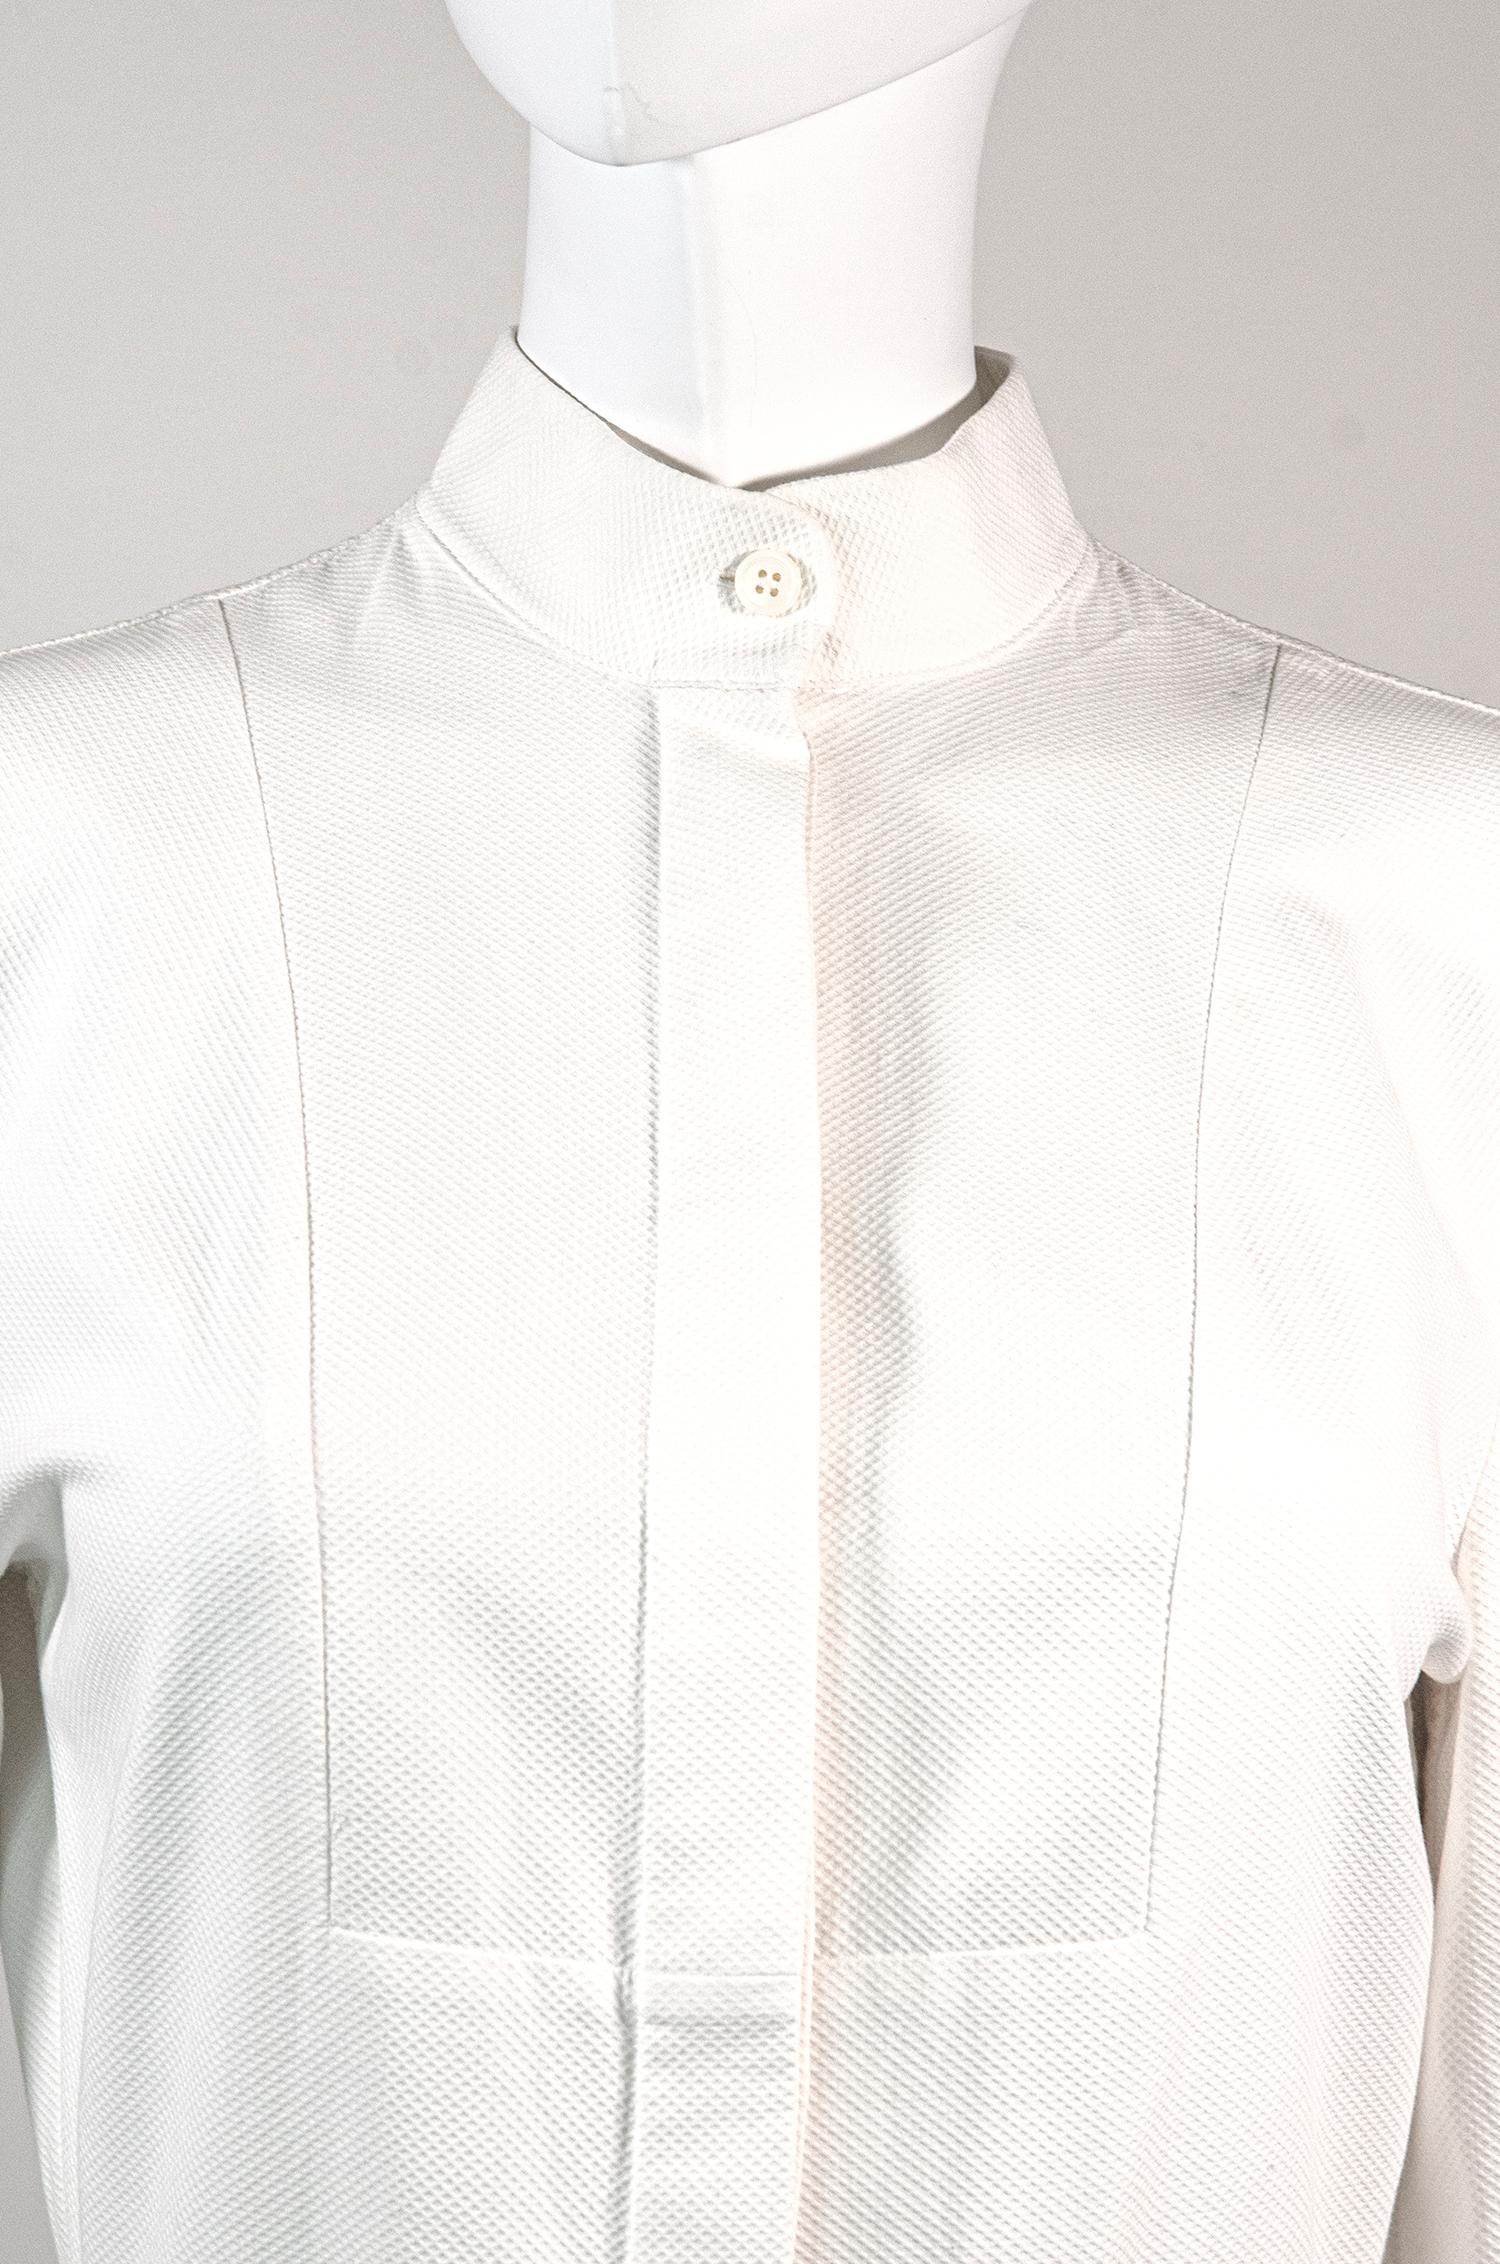 Women's ALEXANDER MCQUEEN Optical White Cotton Shirt Dress With Dramatic Feminine Skirt